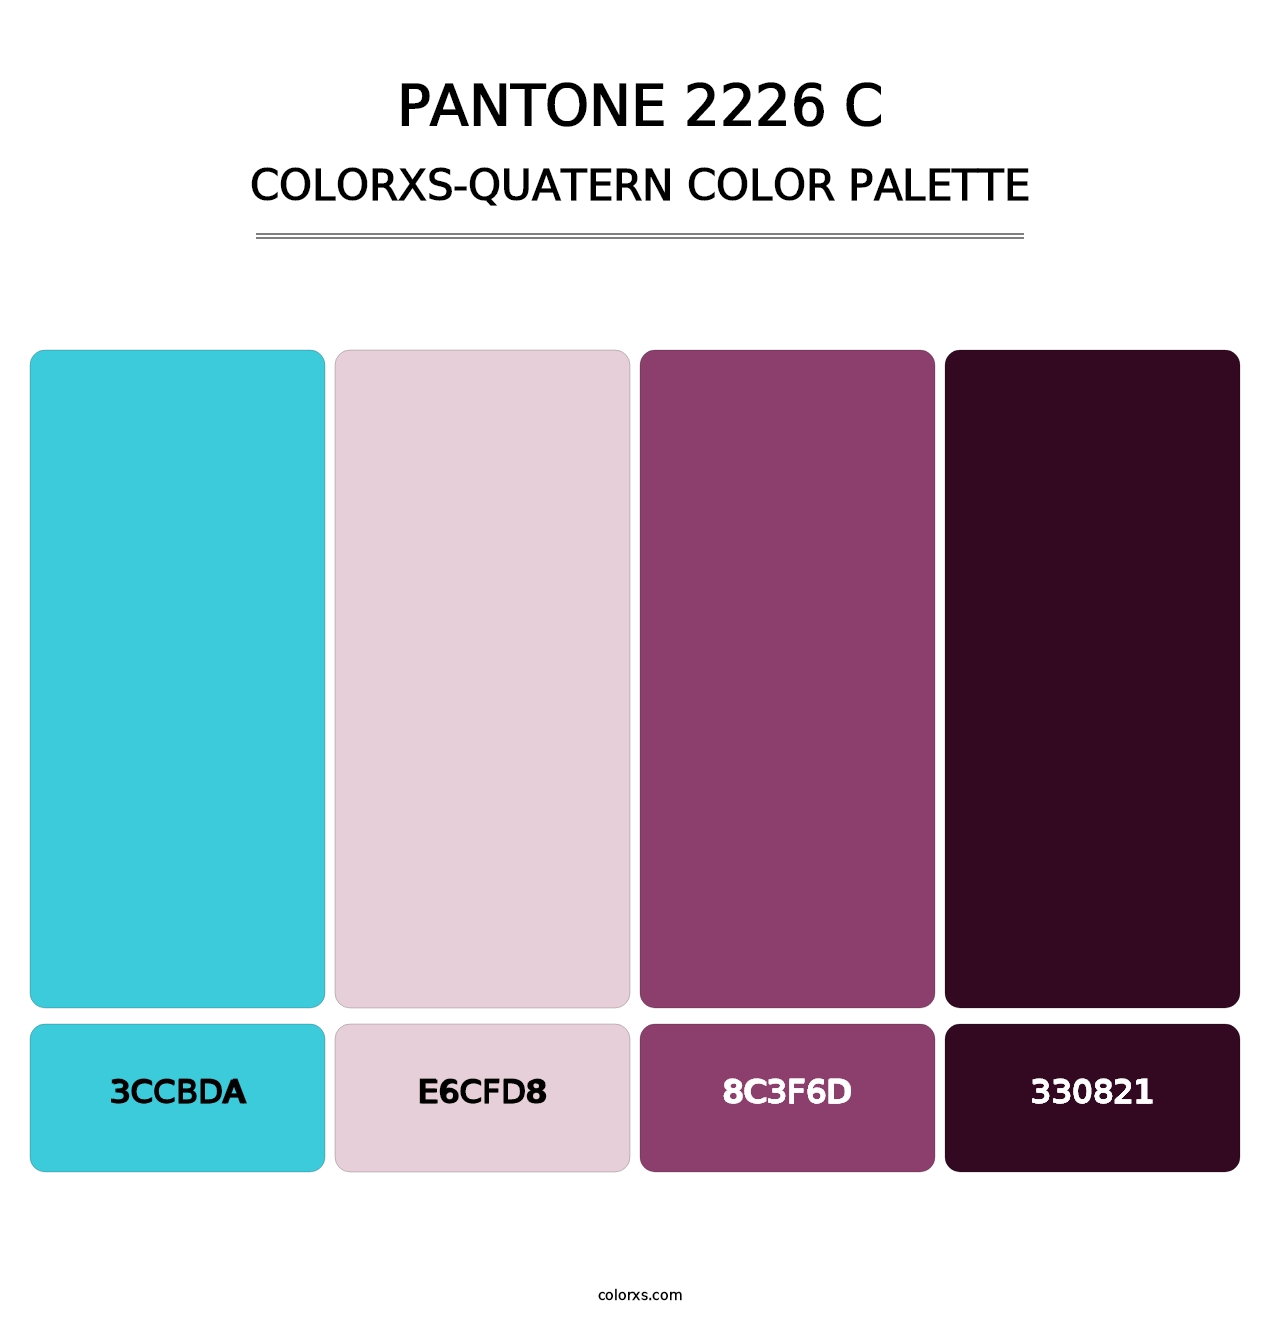 PANTONE 2226 C - Colorxs Quatern Palette